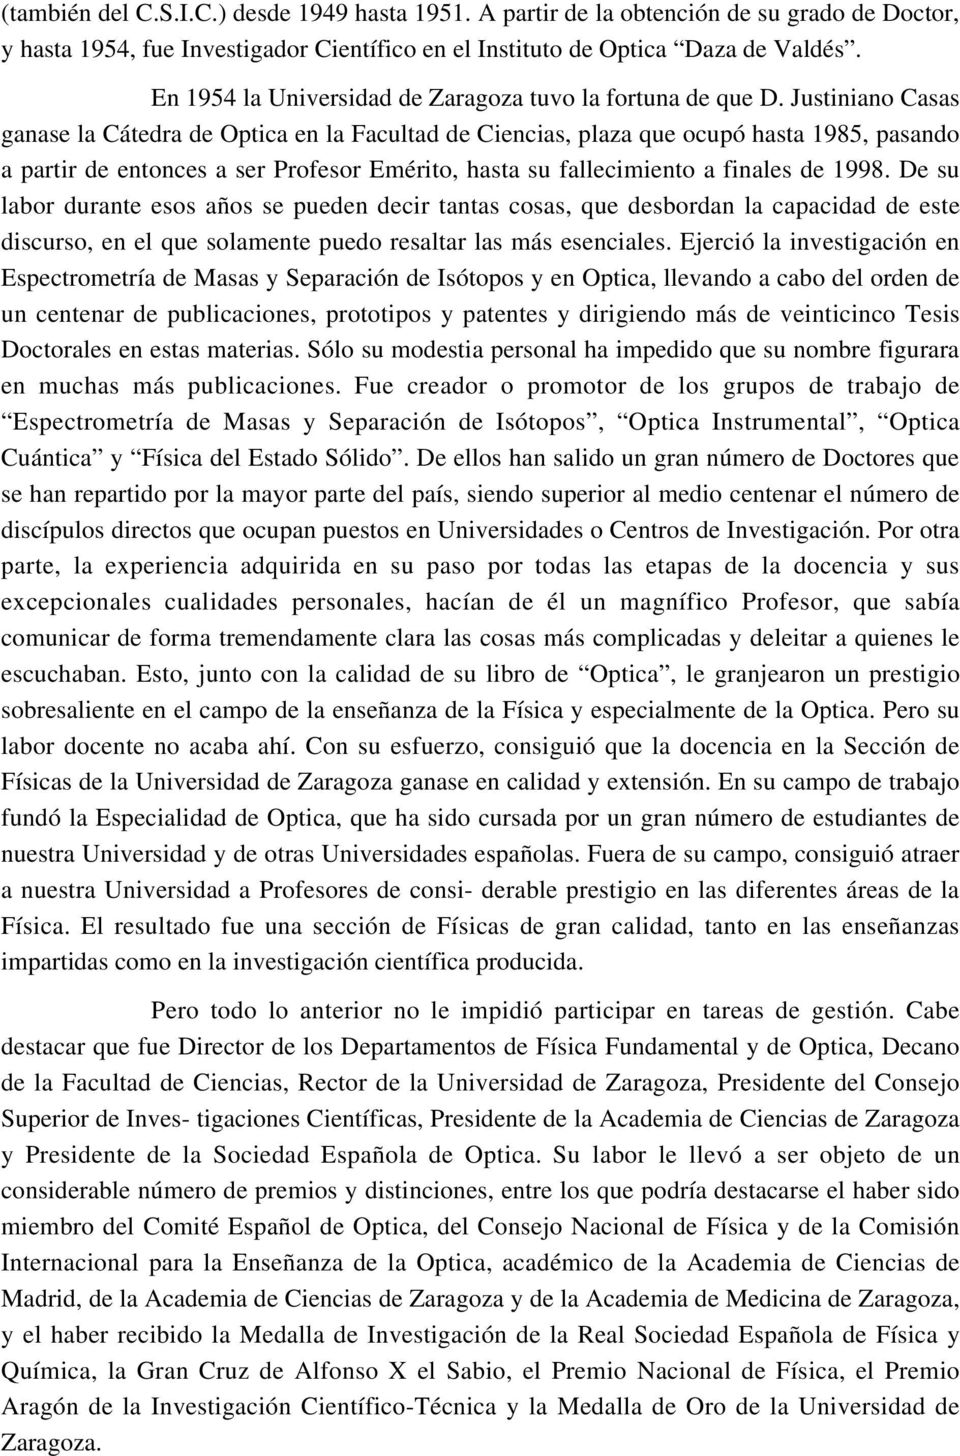 Justiniano Casas ganase la Cátedra de Optica en la Facultad de Ciencias, plaza que ocupó hasta 1985, pasando a partir de entonces a ser Profesor Emérito, hasta su fallecimiento a finales de 1998.